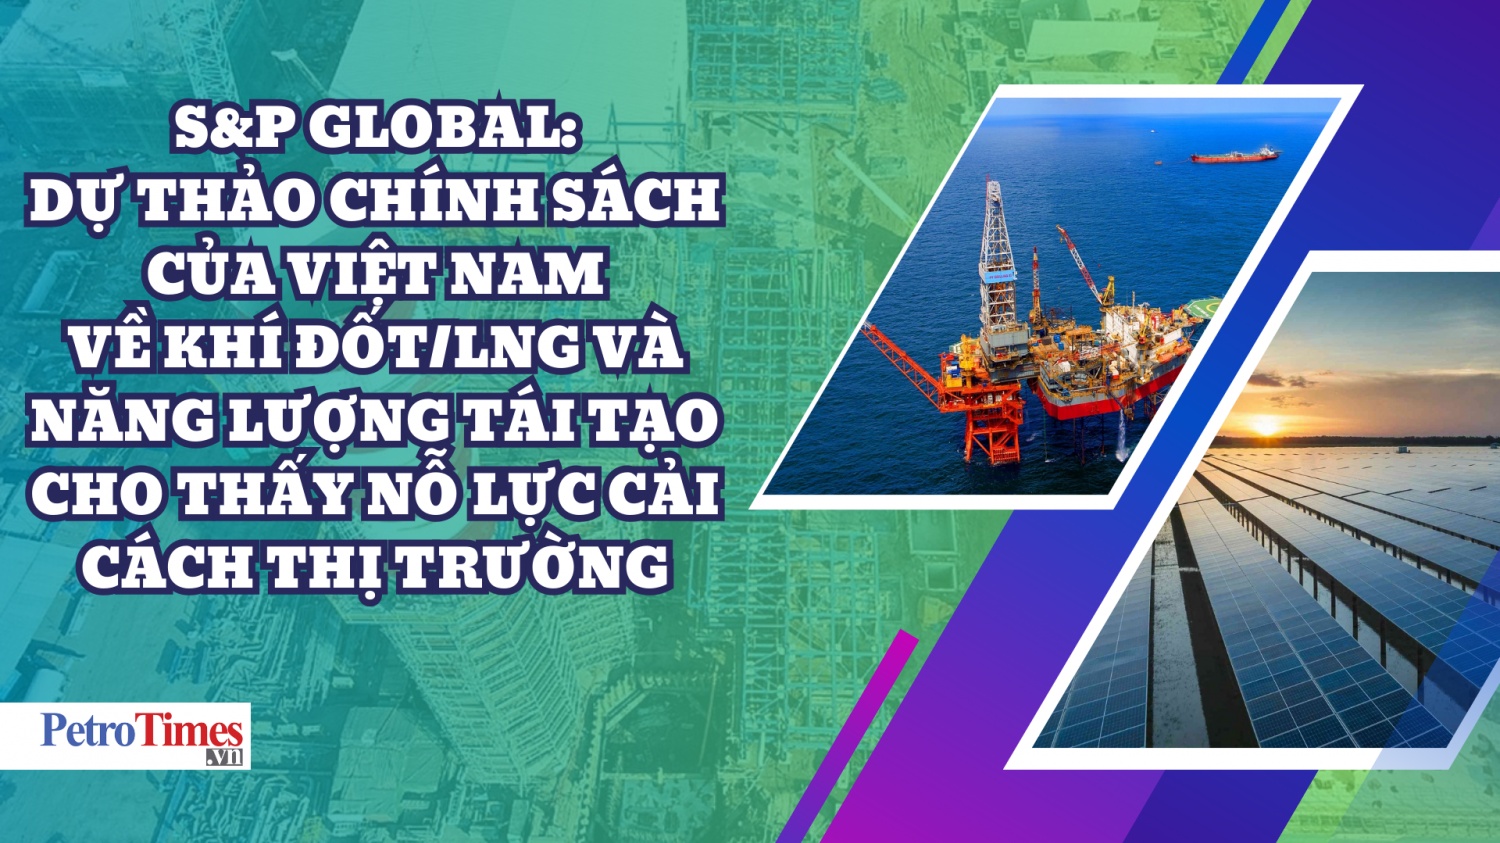 S&P Global: Dự thảo chính sách của Việt Nam về khí đốt/LNG và năng lượng tái tạo cho thấy nỗ lực cải cách thị trường